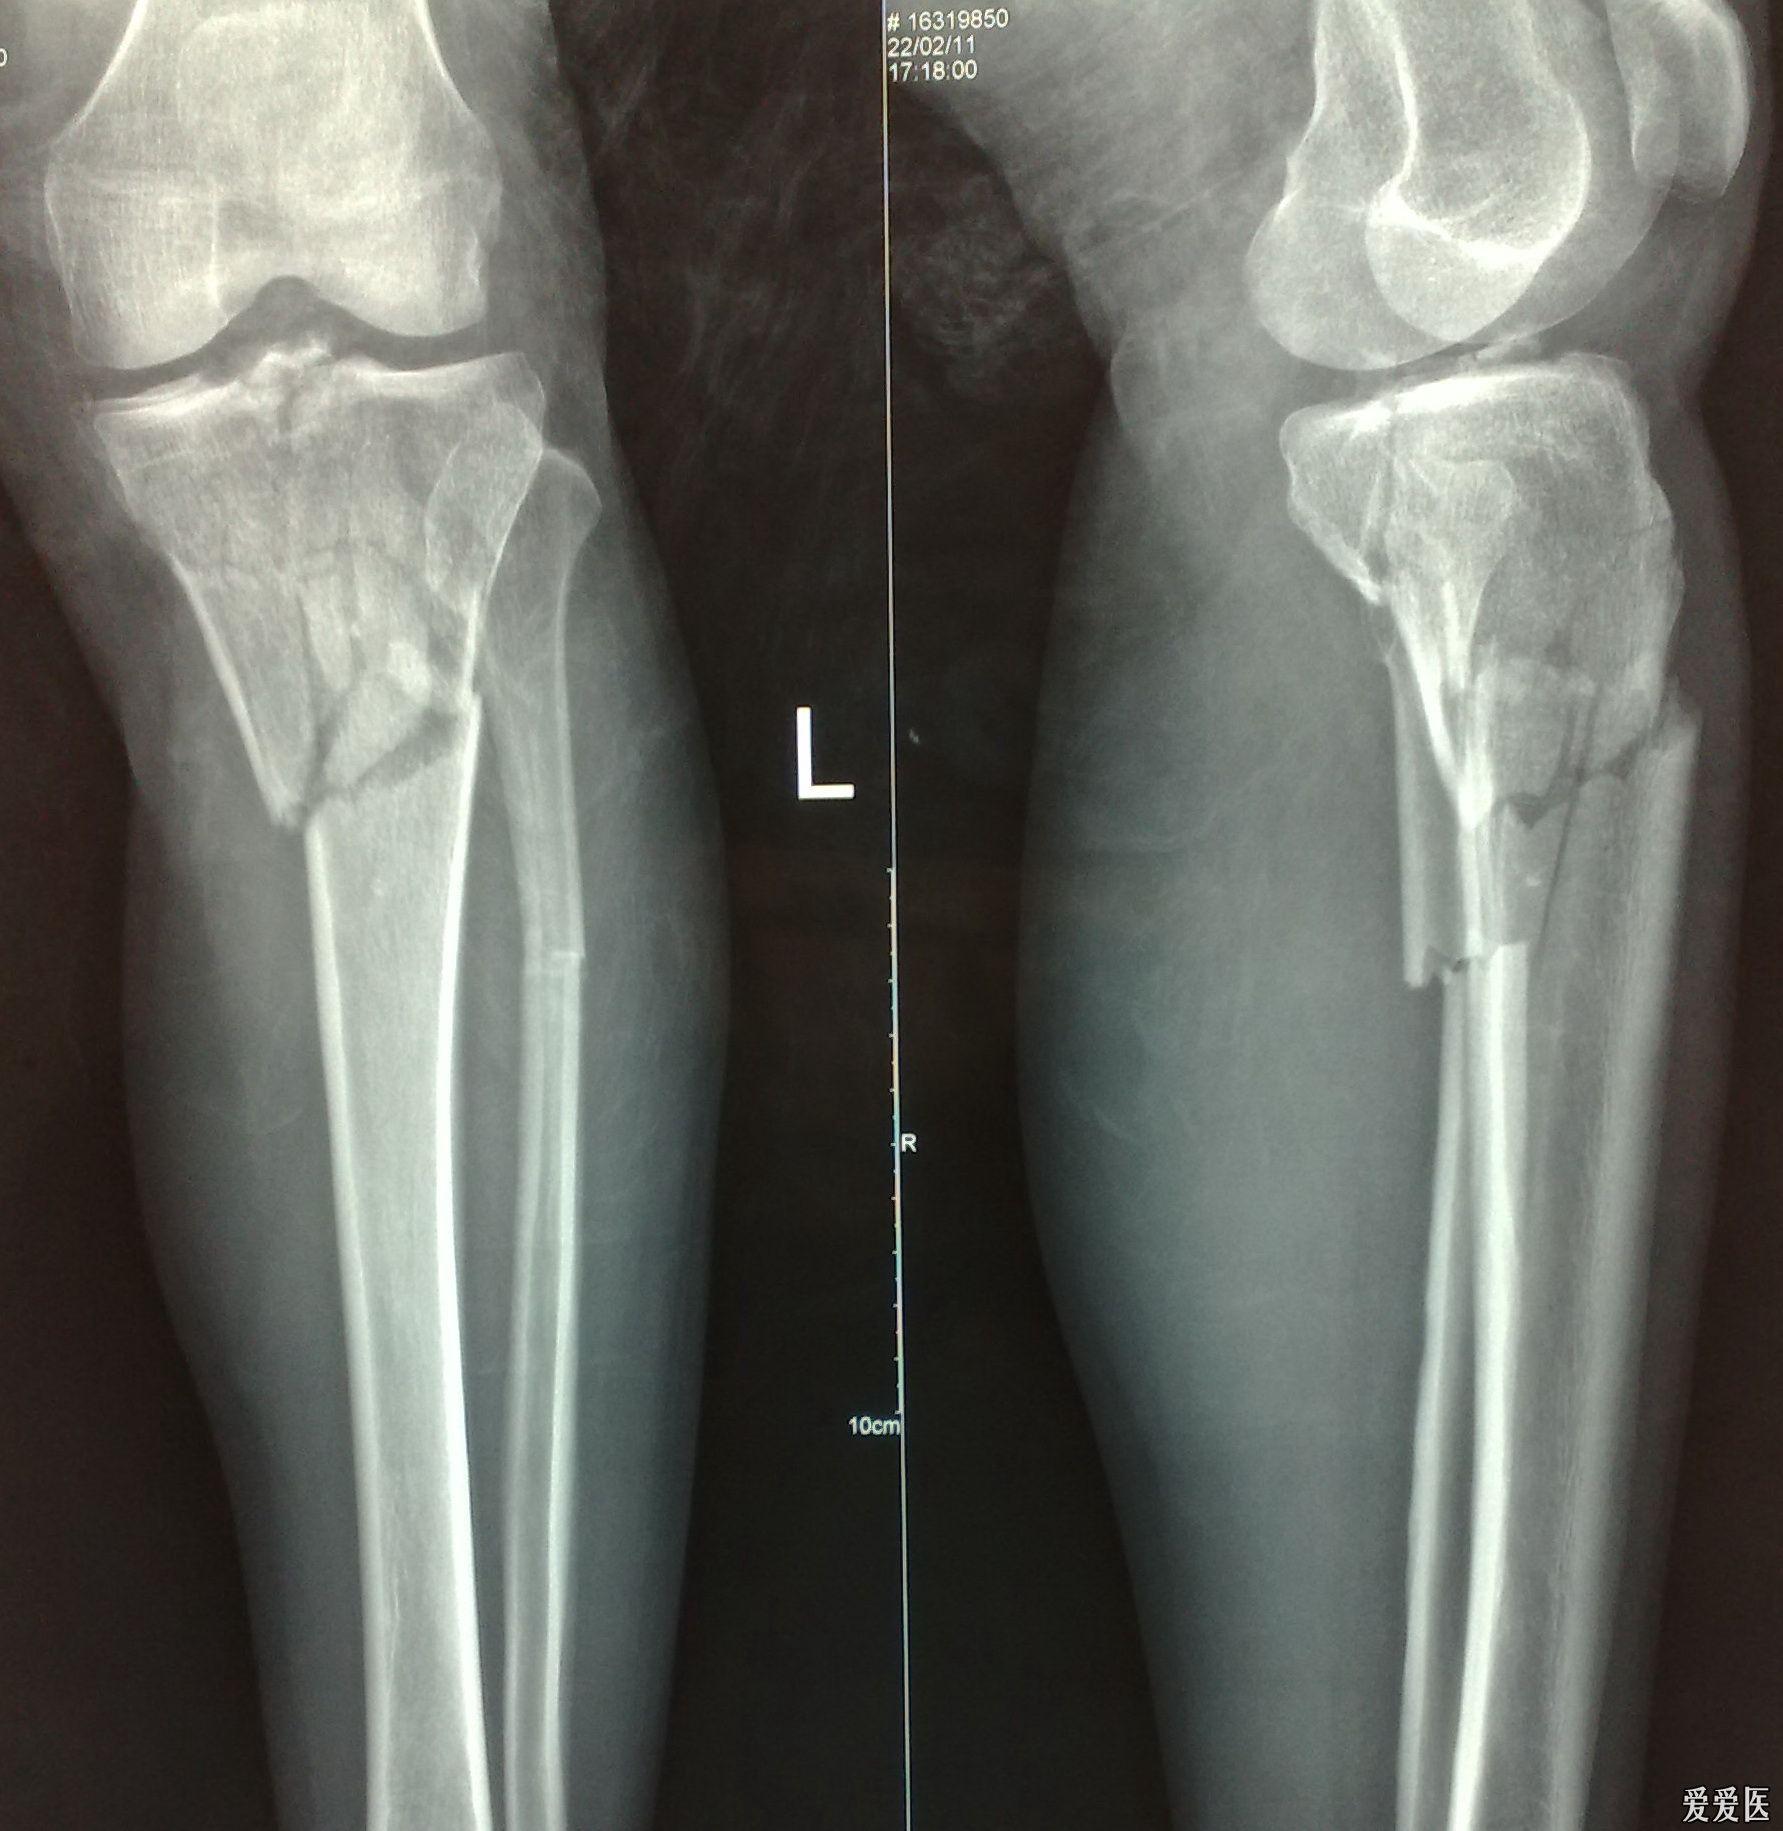 左胫骨上段粉碎性骨折 这个手术怎么作?